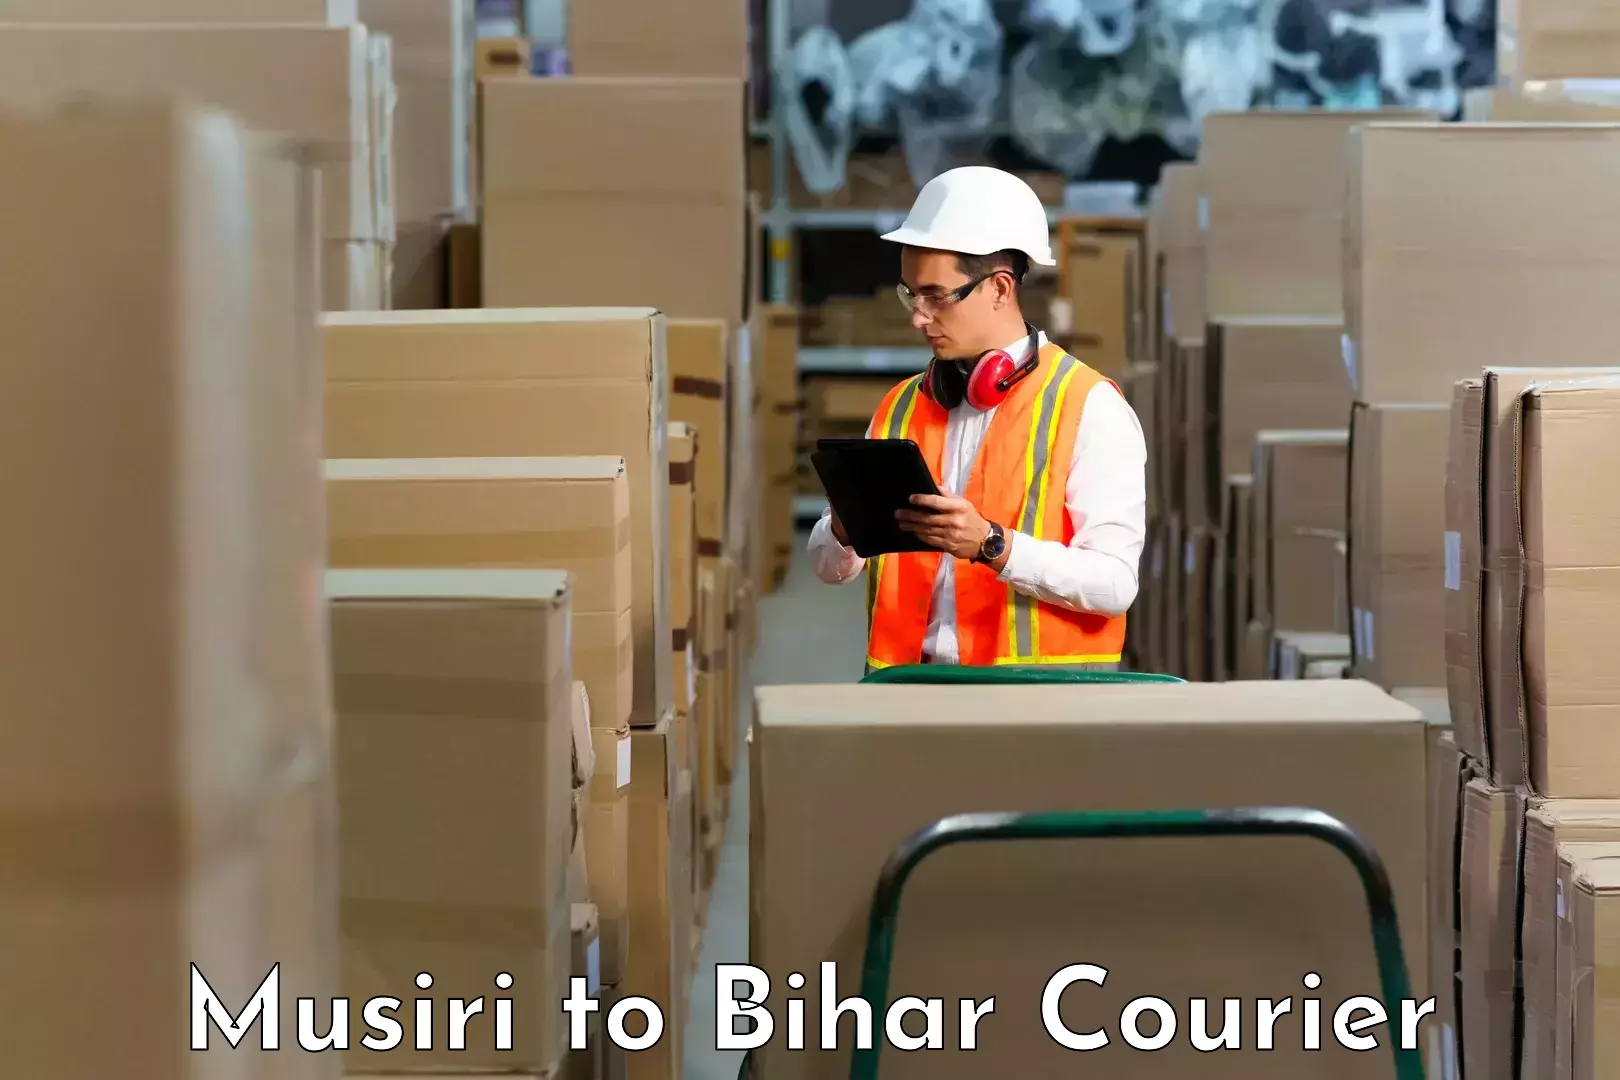 Local delivery service Musiri to Bihar